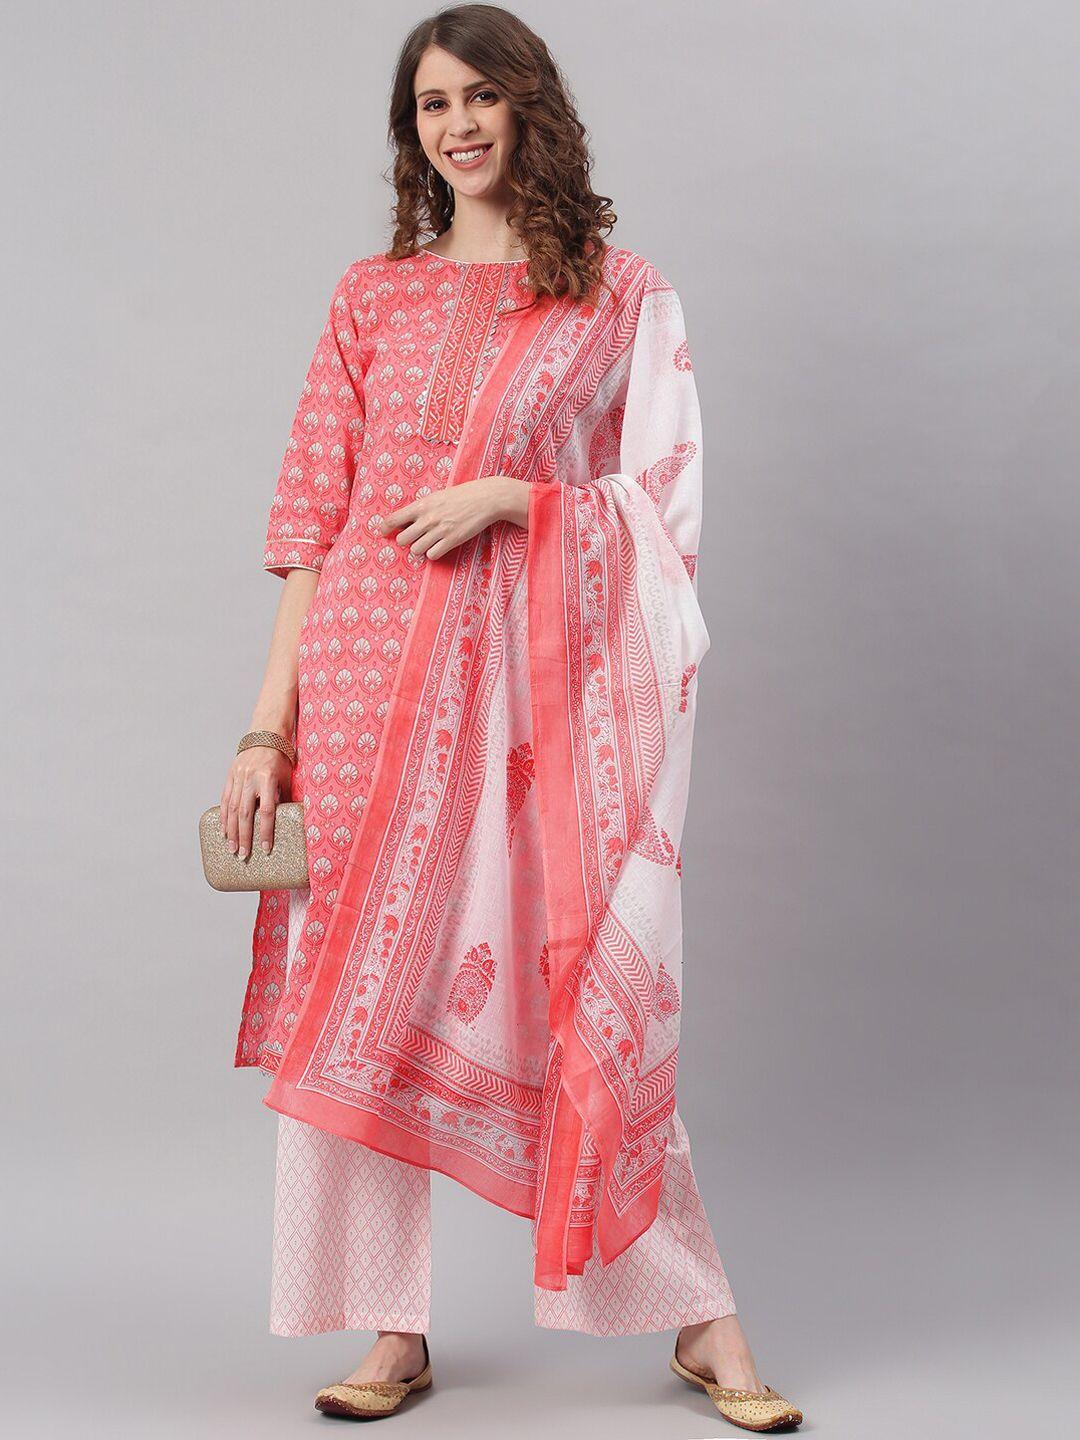 janasya-women-pink-ethnic-motifs-printed-pleated-pure-cotton-kurta-with-palazzos-&-dupatta